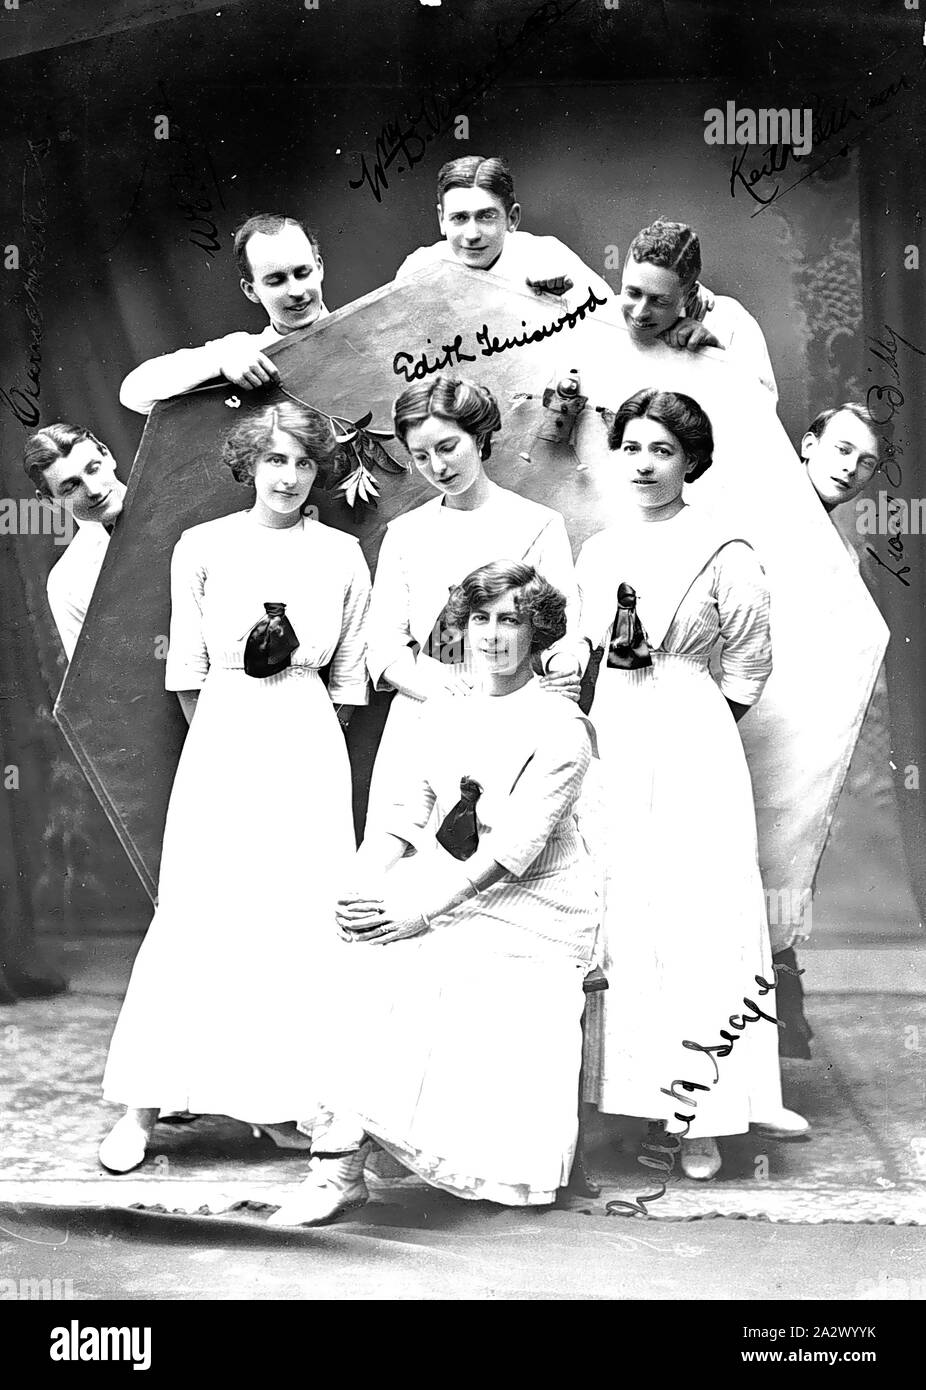 Négatif - Hobart, Tasmanie, vers 1911, un groupe d'acteurs. Le jeu a été appelé 'le' saltimbanques ou qui peuvent avoir été le nom du groupe. Quatre femmes se tenir en face d'un coupé alors que cinq hommes autour d'elle par les pairs Banque D'Images